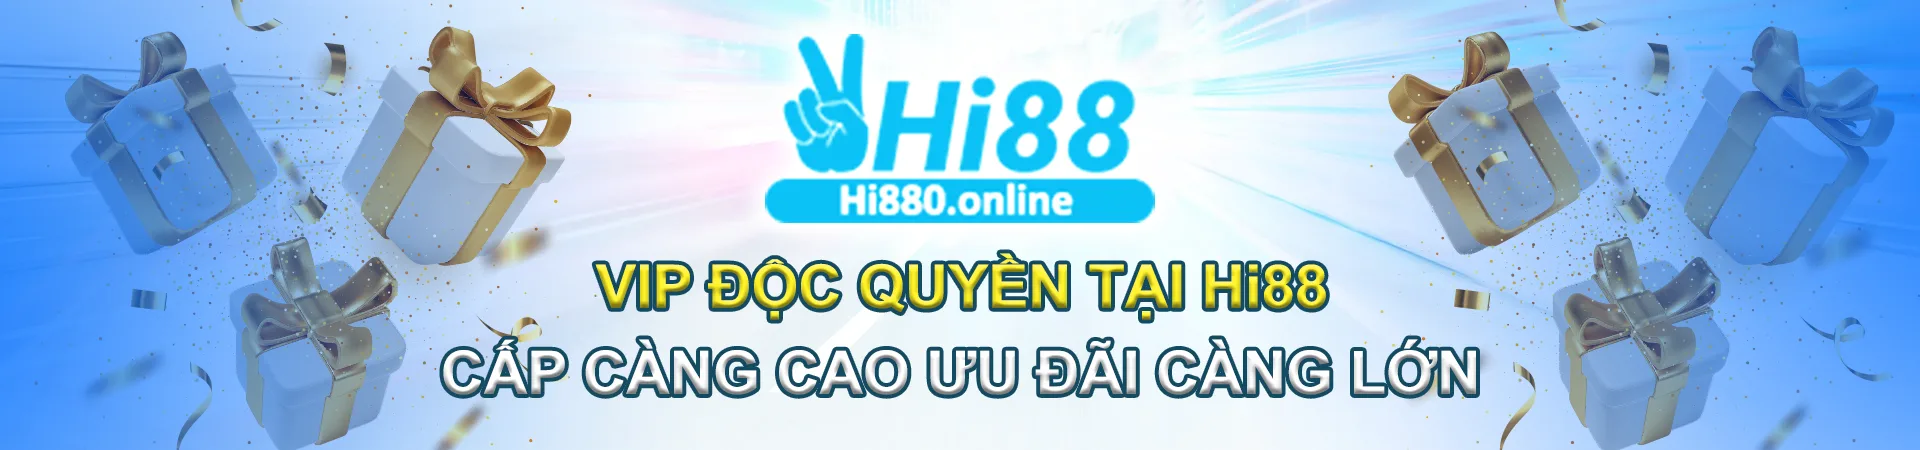 Banner HI88